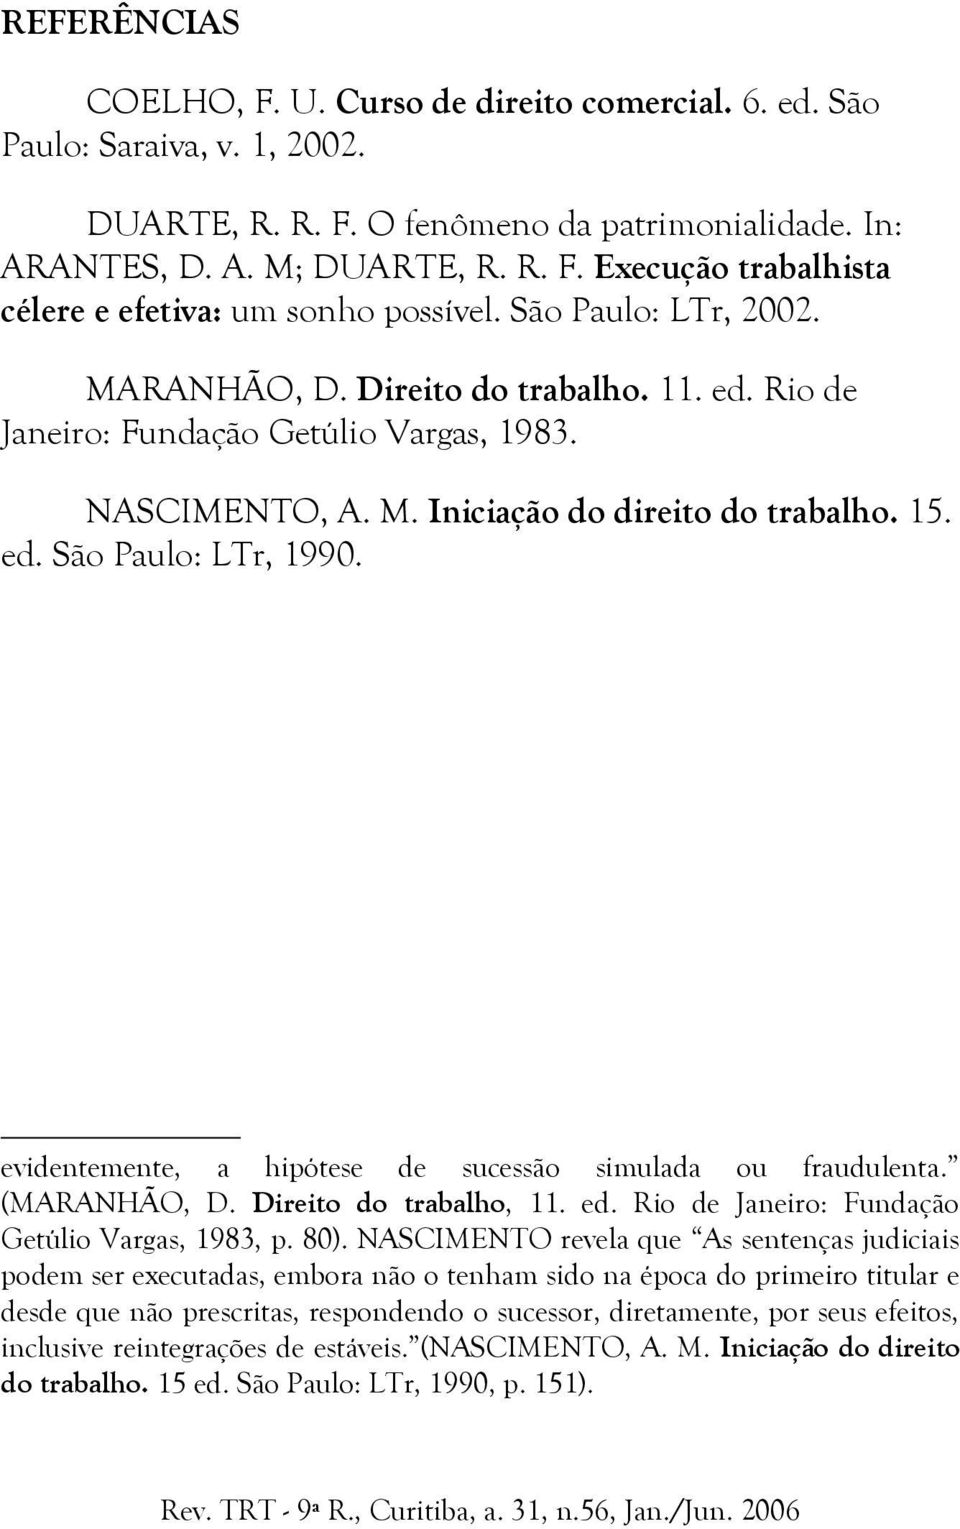 evidentemente, a hipótese de sucessão simulada ou fraudulenta. (MARANHÃO, D. Direito do trabalho, 11. ed. Rio de Janeiro: Fundação Getúlio Vargas, 1983, p. 80).